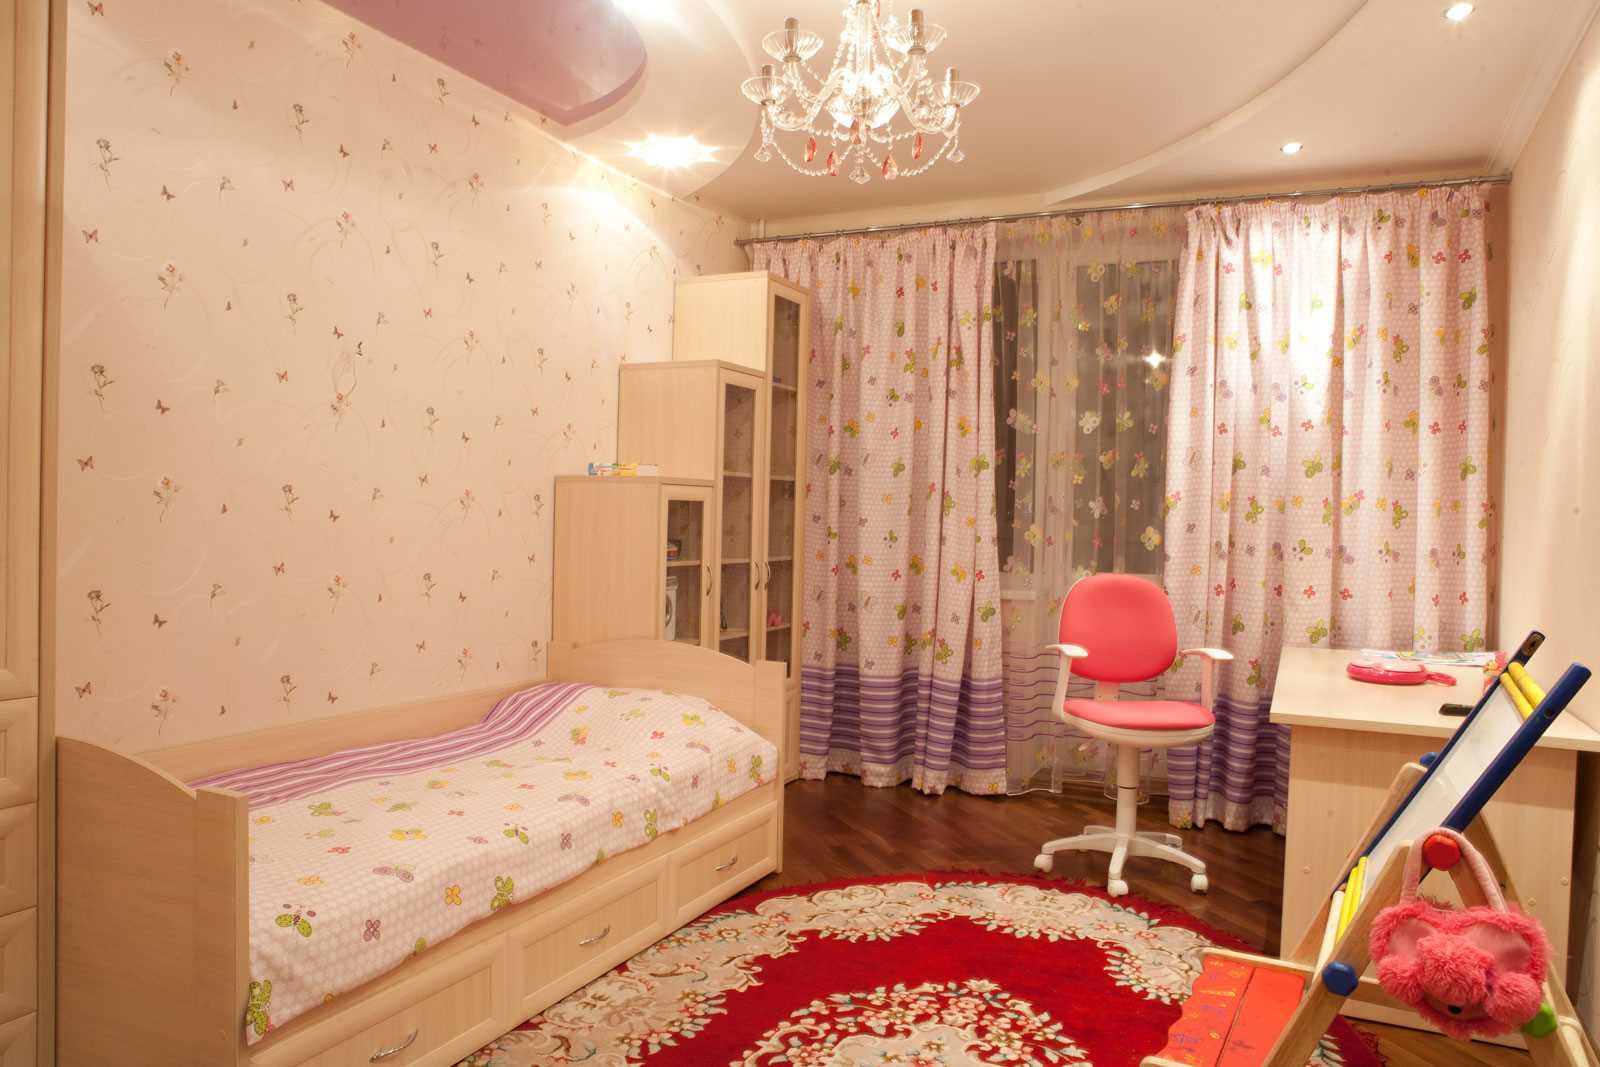 l'idea di un design luminoso di una camera per bambini per una ragazza di 12 mq